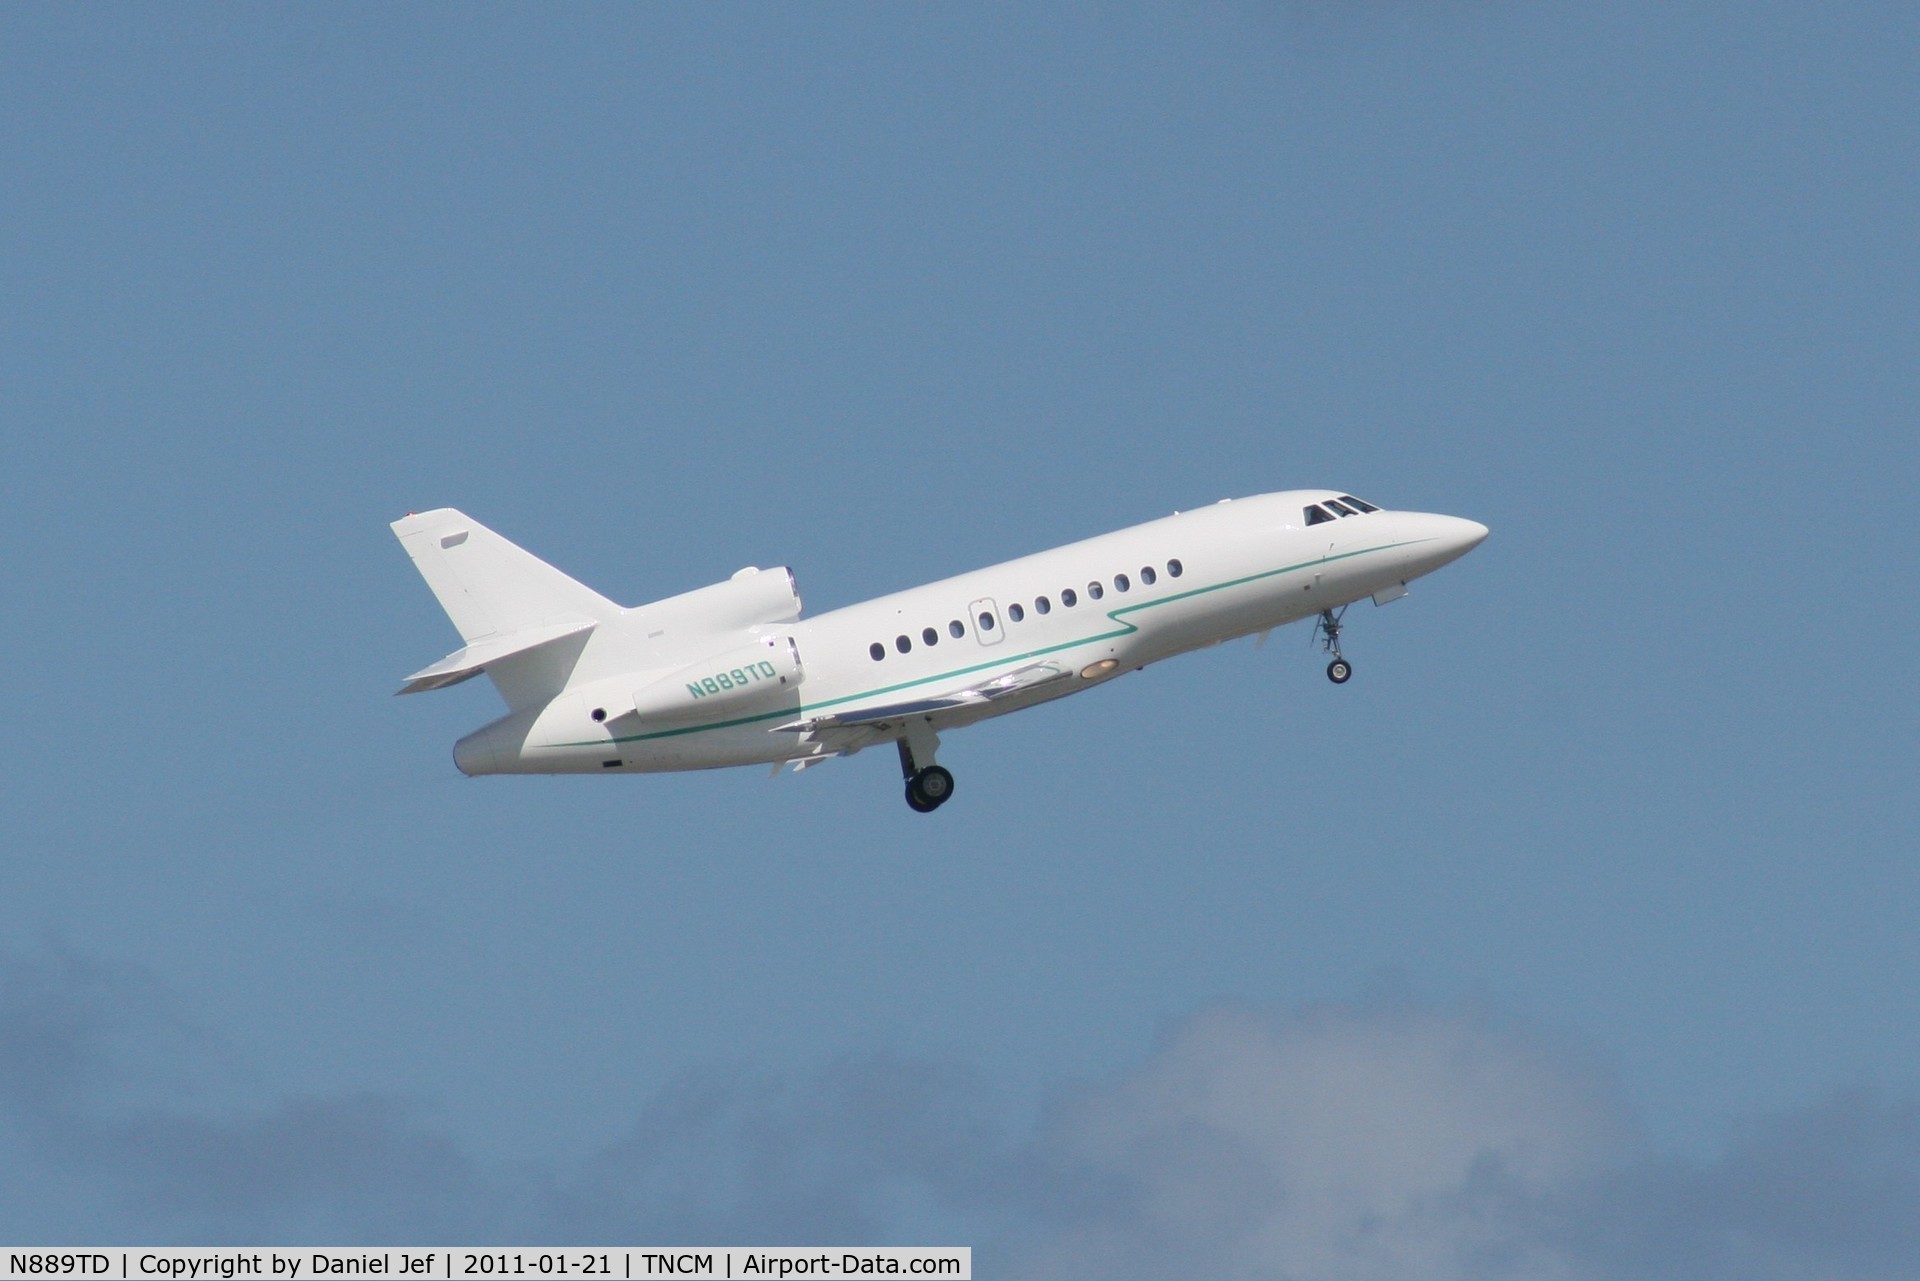 N889TD, 1990 Dassault Falcon 900 C/N 94, N889TD departing TNCM runway 10